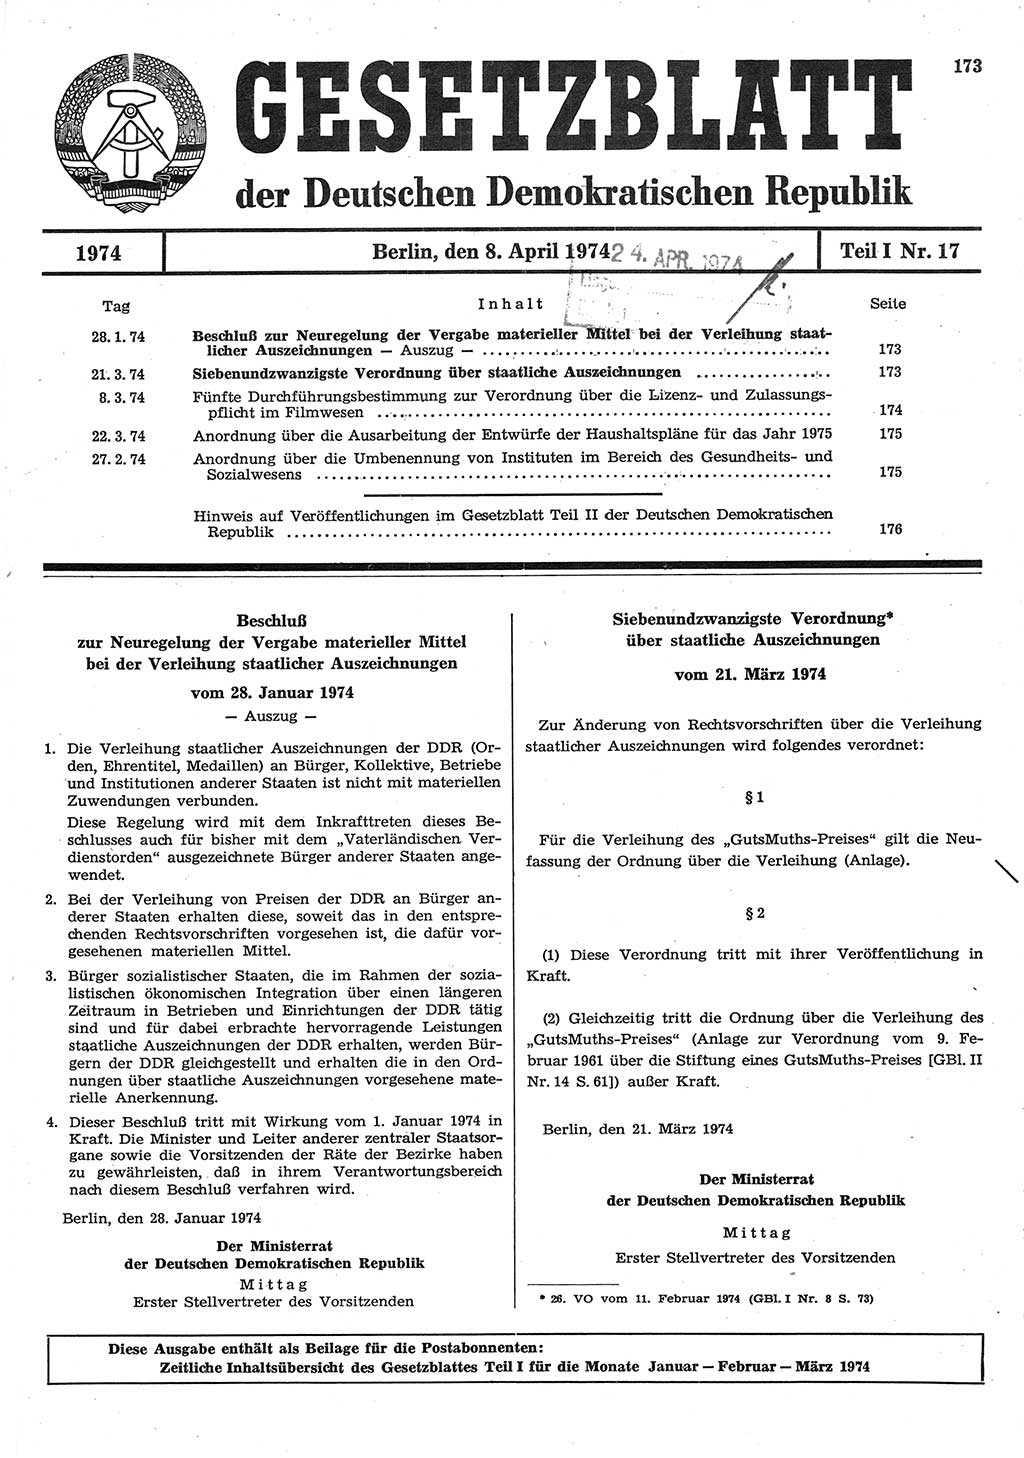 Gesetzblatt (GBl.) der Deutschen Demokratischen Republik (DDR) Teil Ⅰ 1974, Seite 173 (GBl. DDR Ⅰ 1974, S. 173)